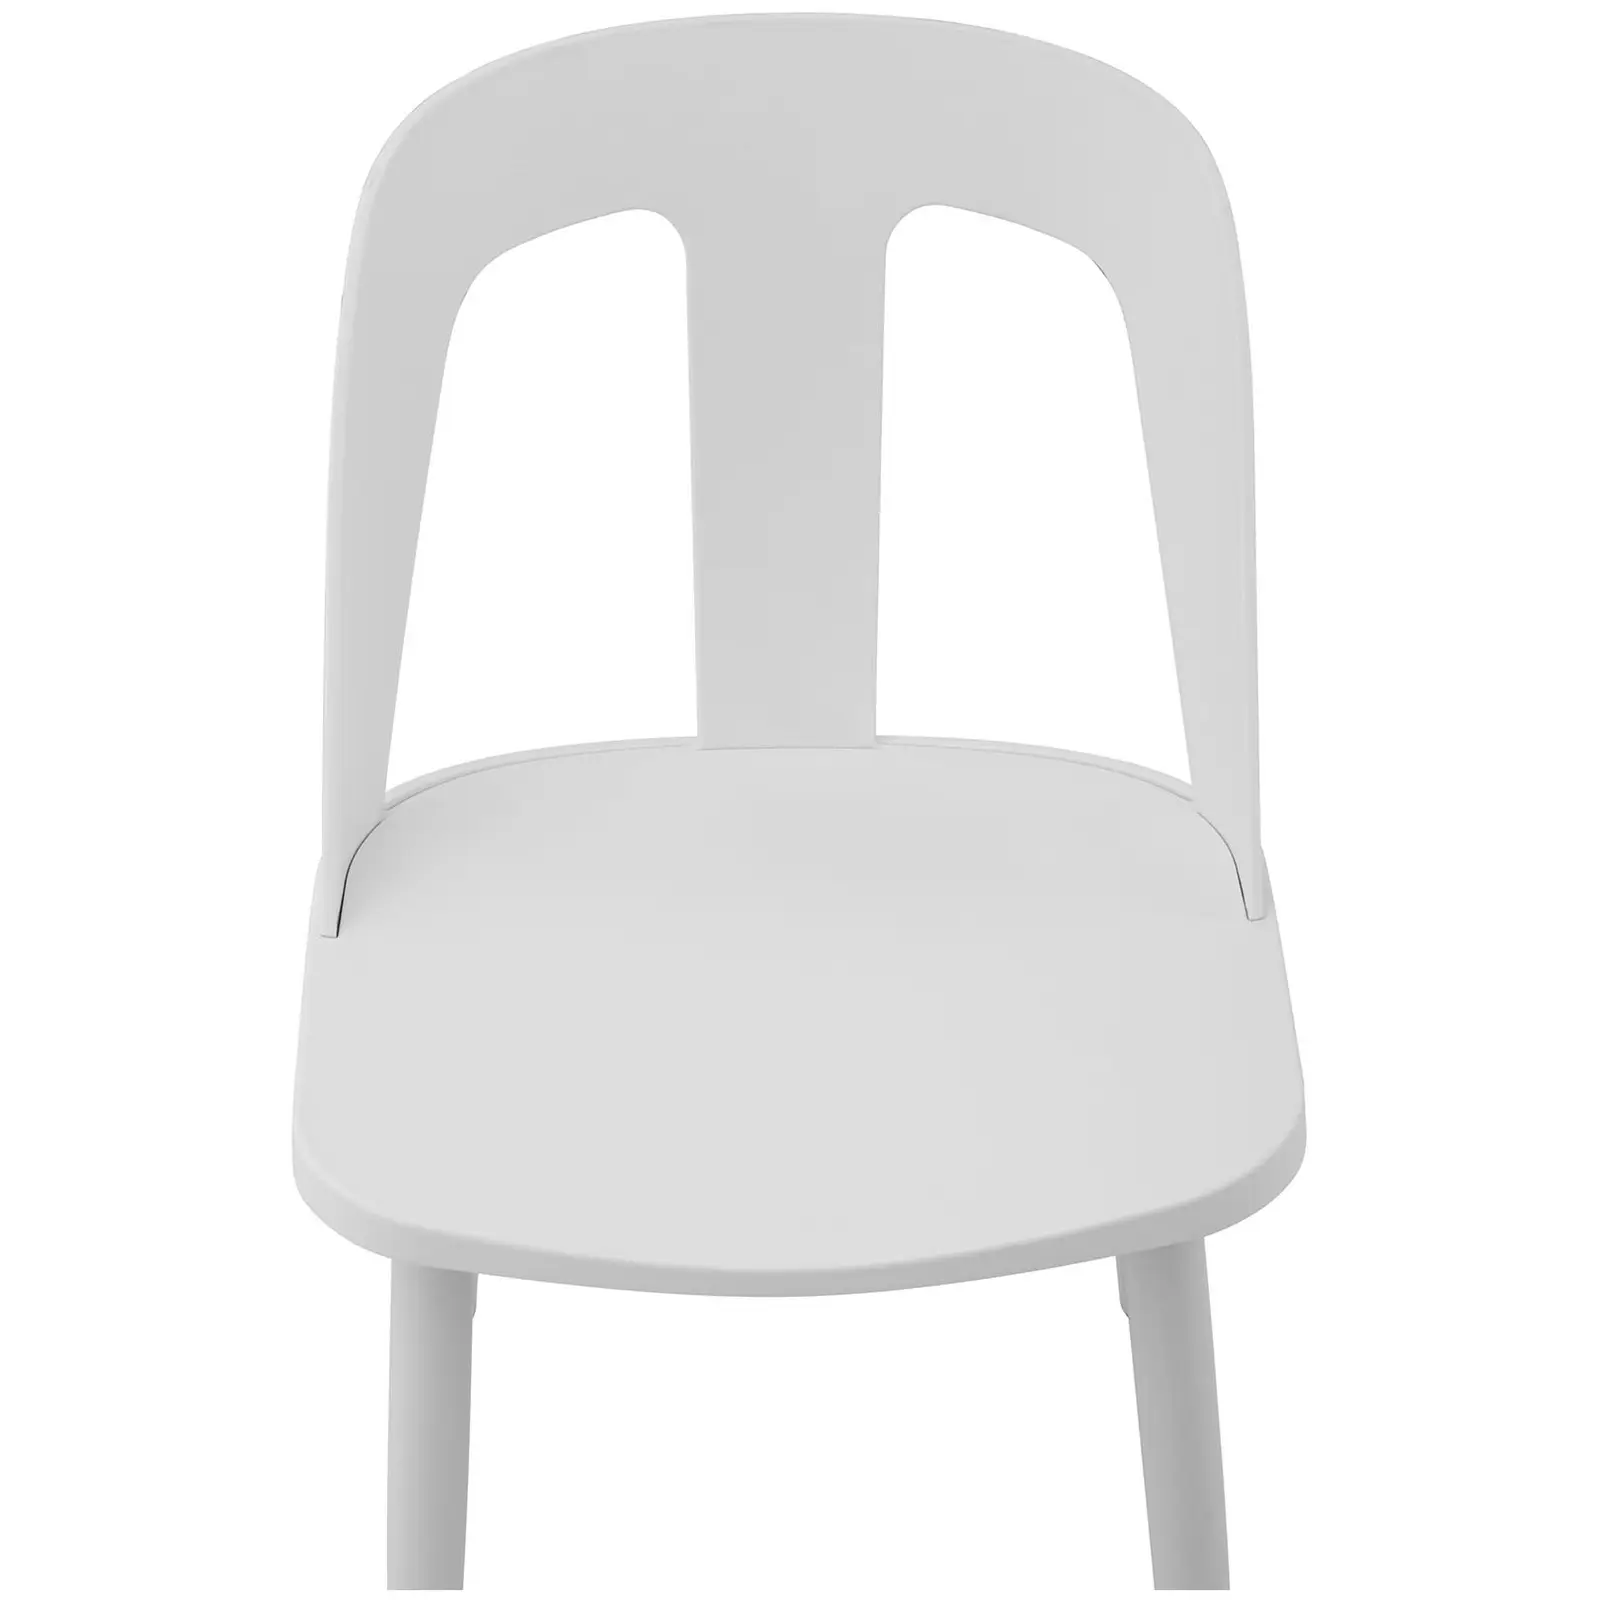 Silla - set de 2 - hasta 150 kg - asiento de 56 x 46,5 cm - negra/blanca